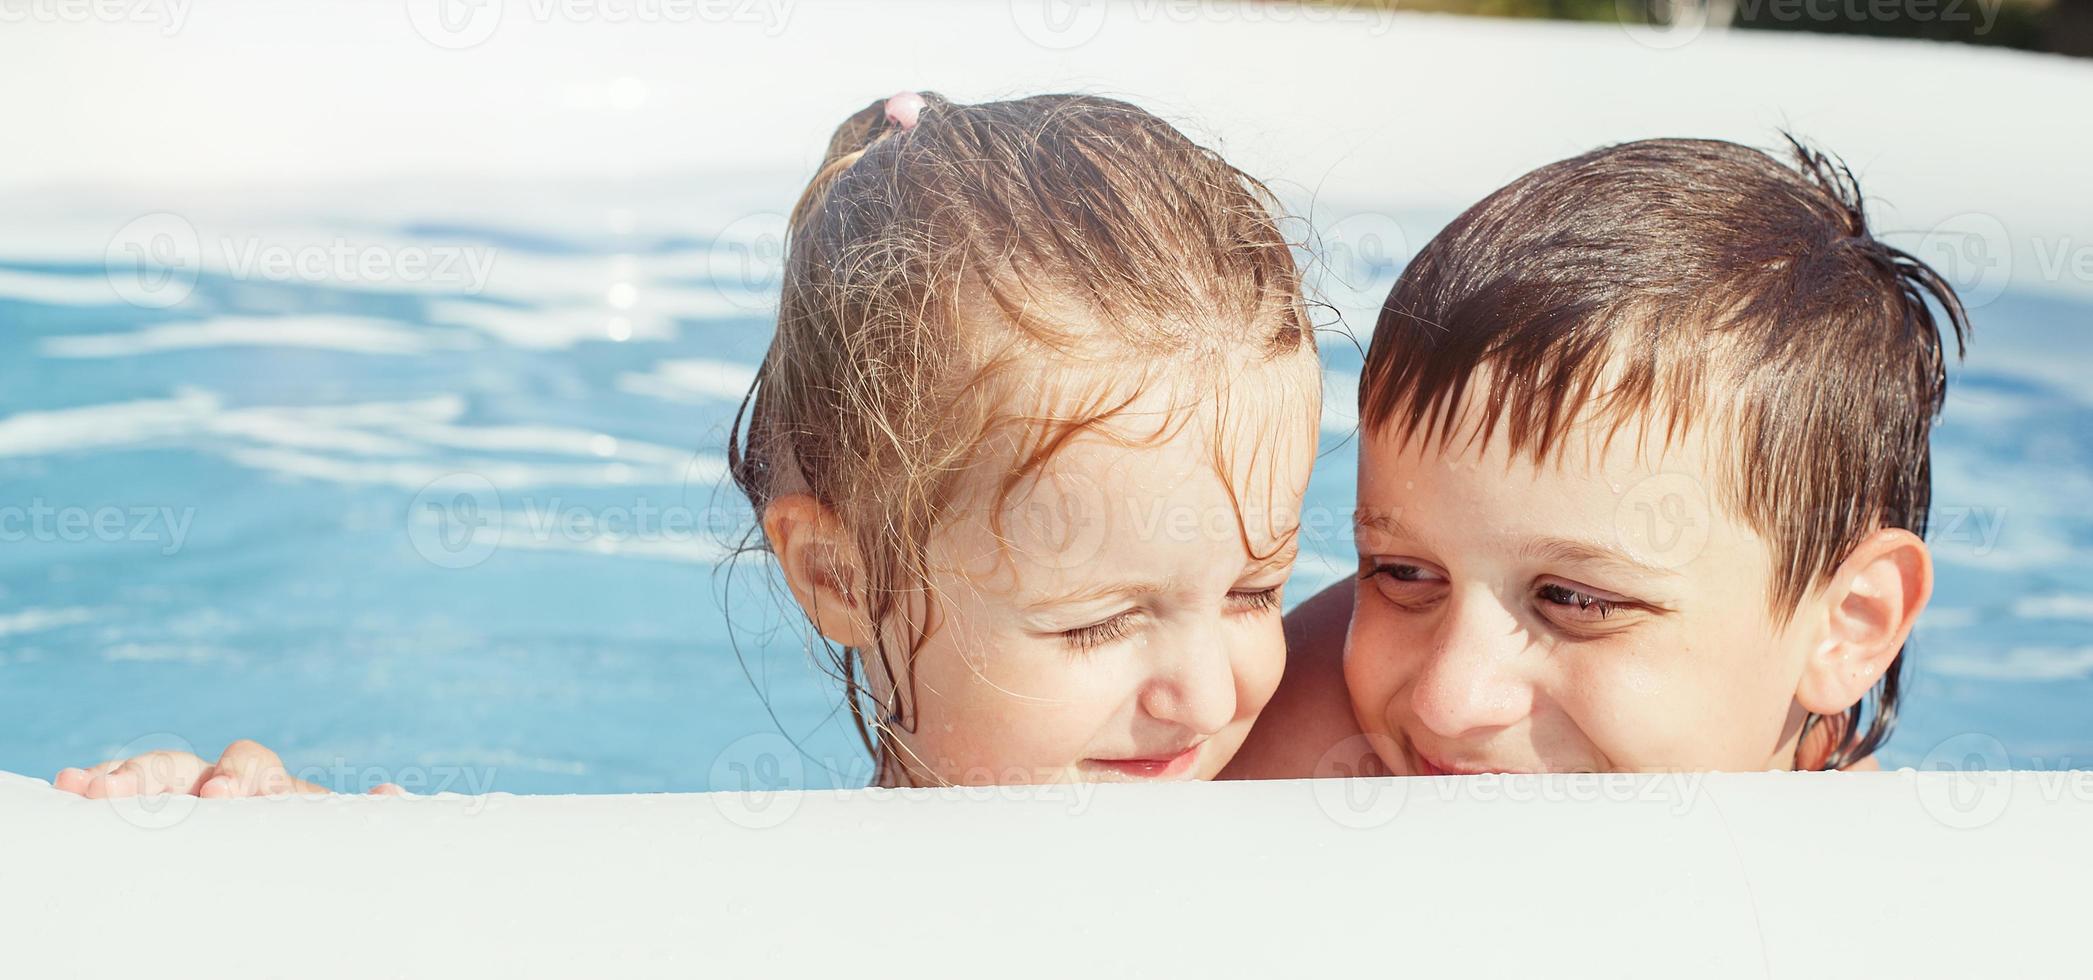 retrato de contento chico y niña en el piscina en el jardín a verano foto